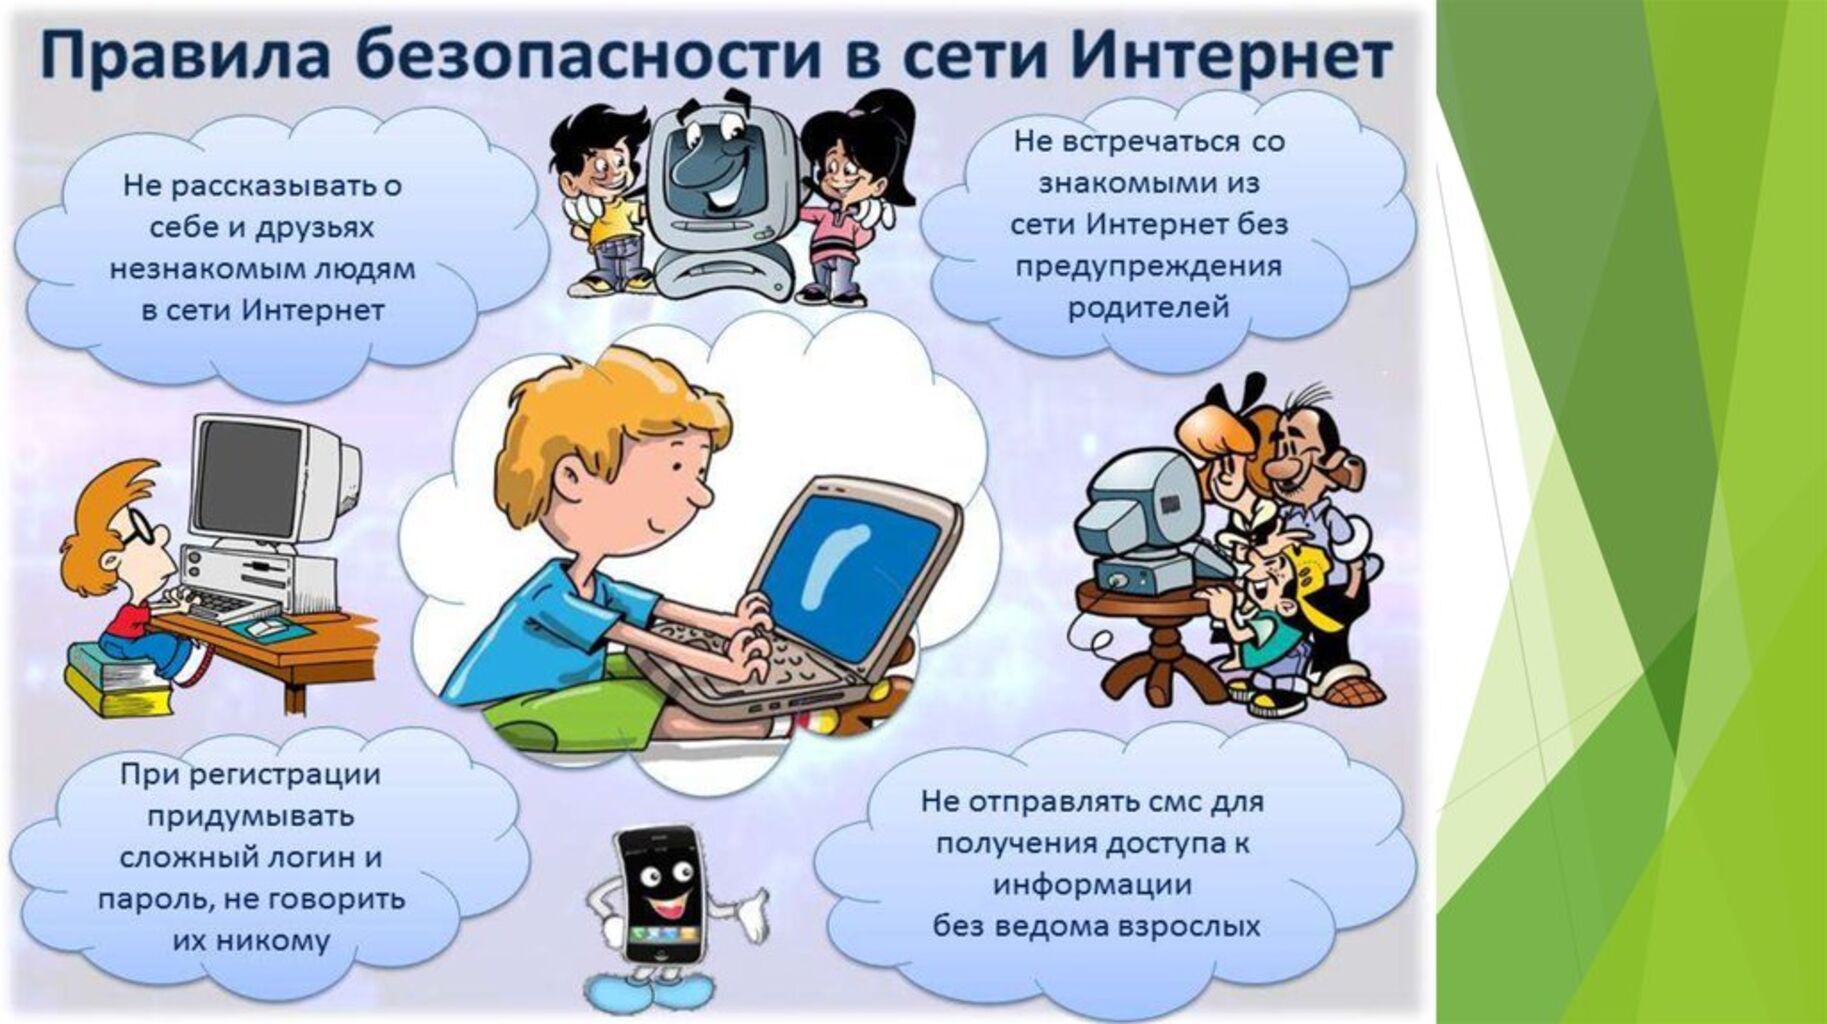 Интернет урок дети. Безопасность в сети интернет. Безопасность в интернете для детей. Правила безопасности в сети интернет. Опасности в интернете для детей.